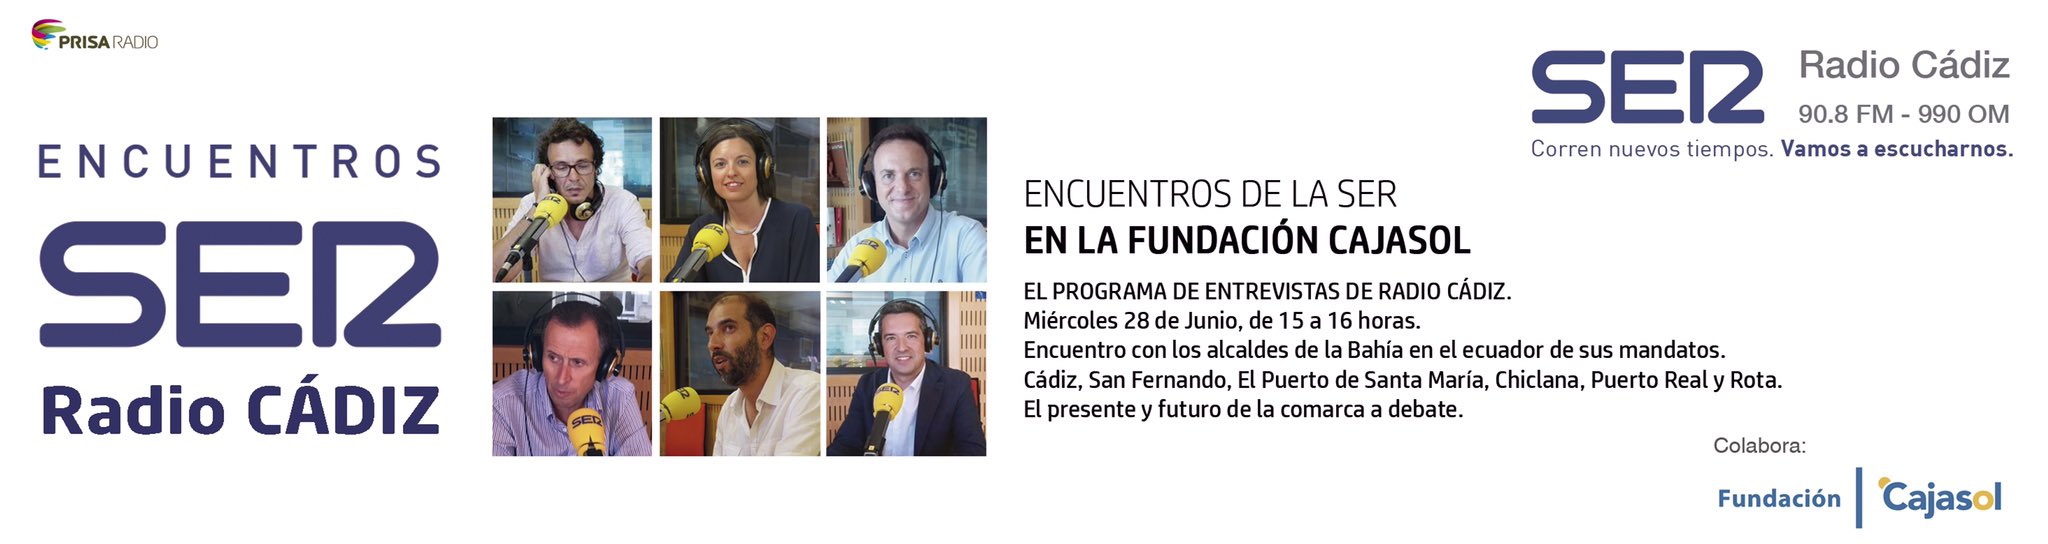 Anuncio de 'Los Encuentro de LA SER' en la Fundación Cajasol